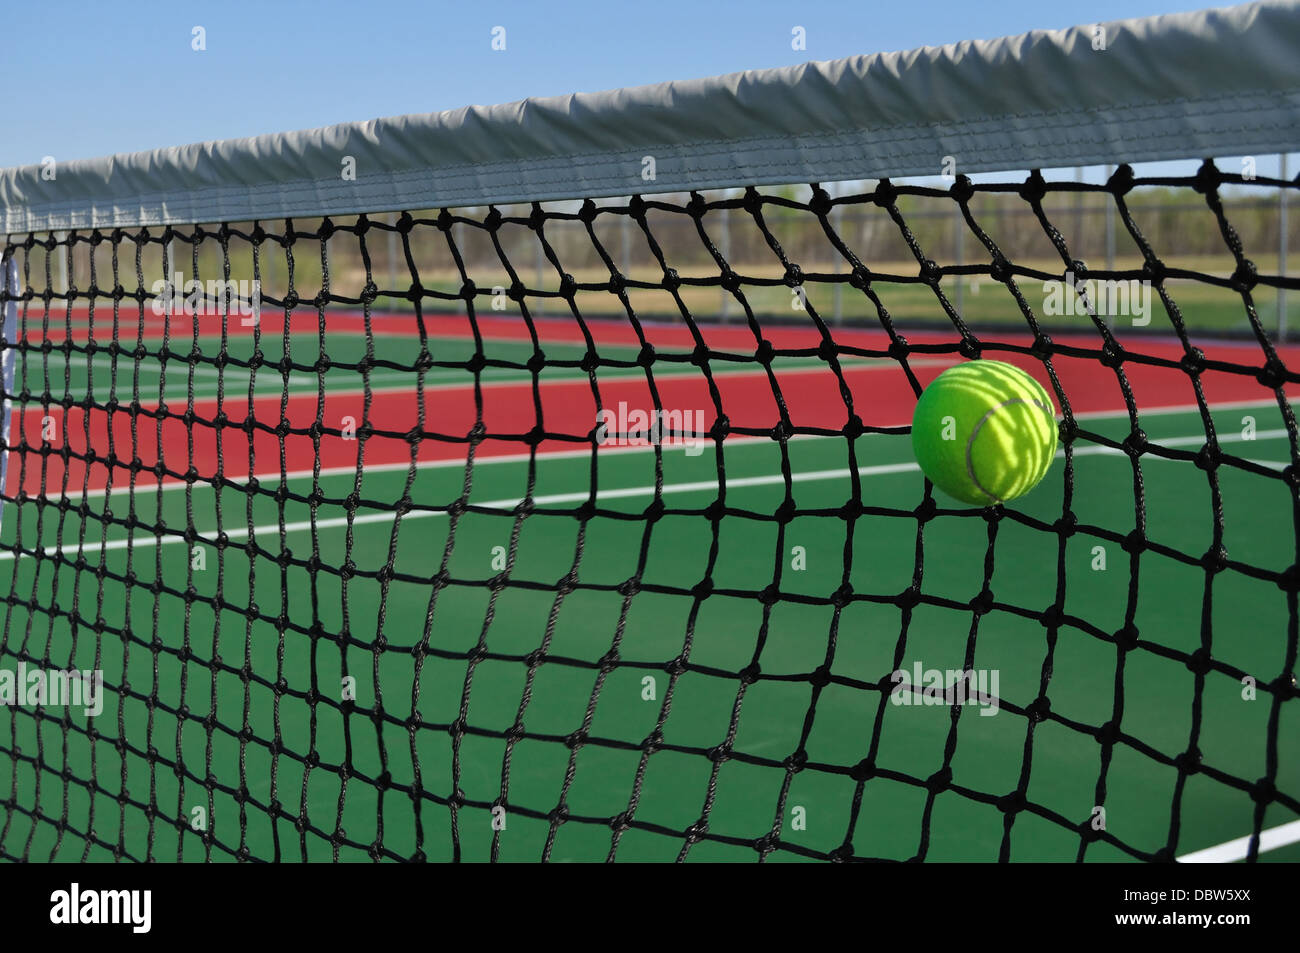 Tennisplatz, net und ball - Tennis spielen / Störung / dienen schlagen im Netz Stockfoto